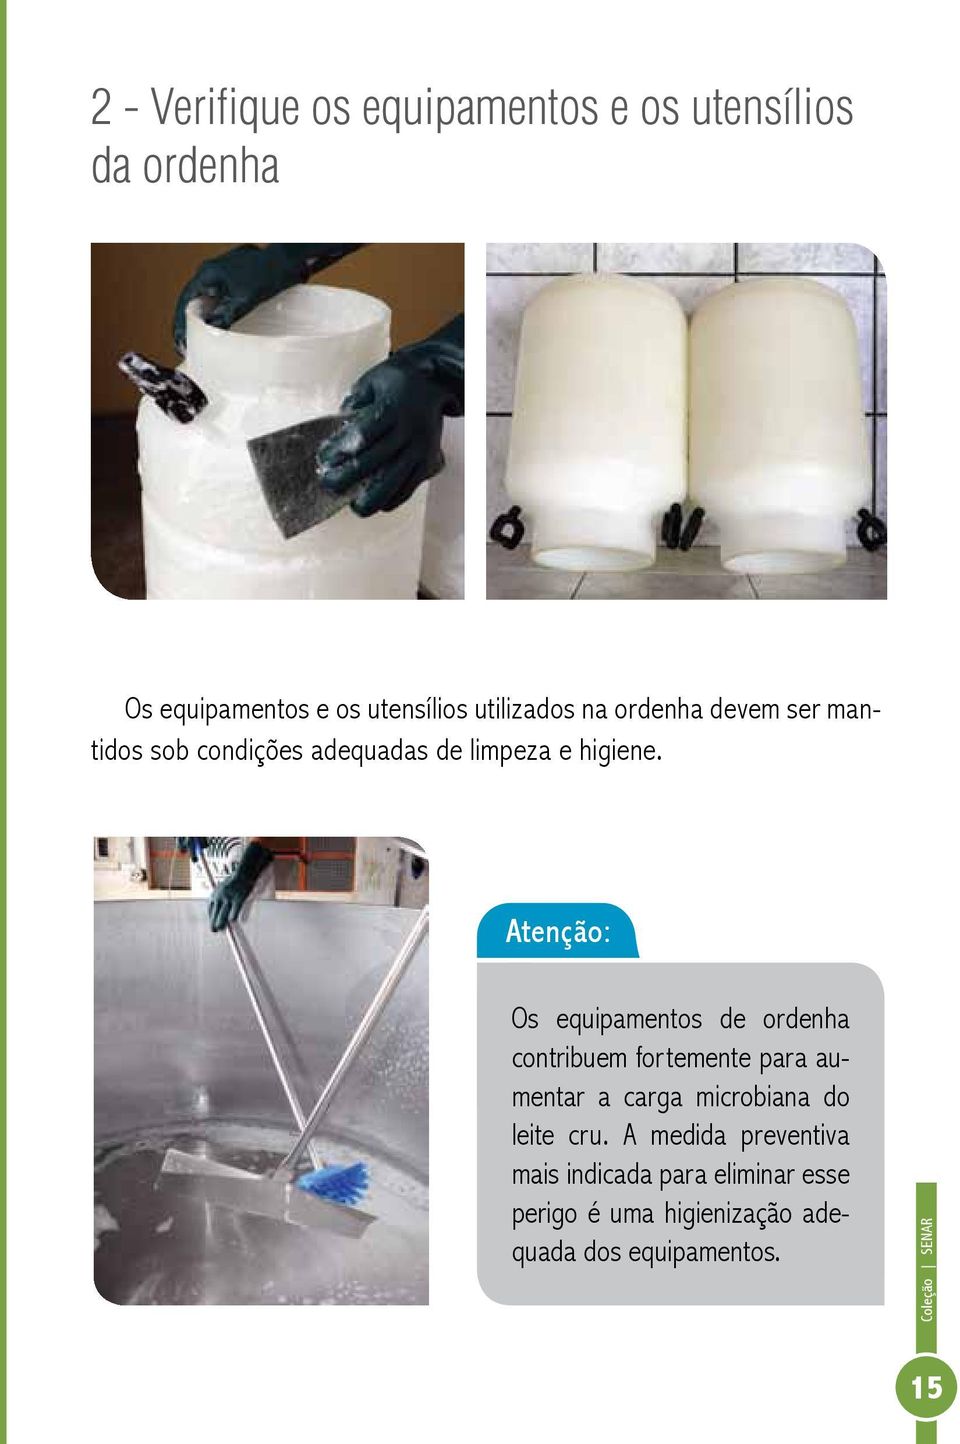 Os equipamentos de ordenha contribuem fortemente para aumentar a carga microbiana do leite cru.